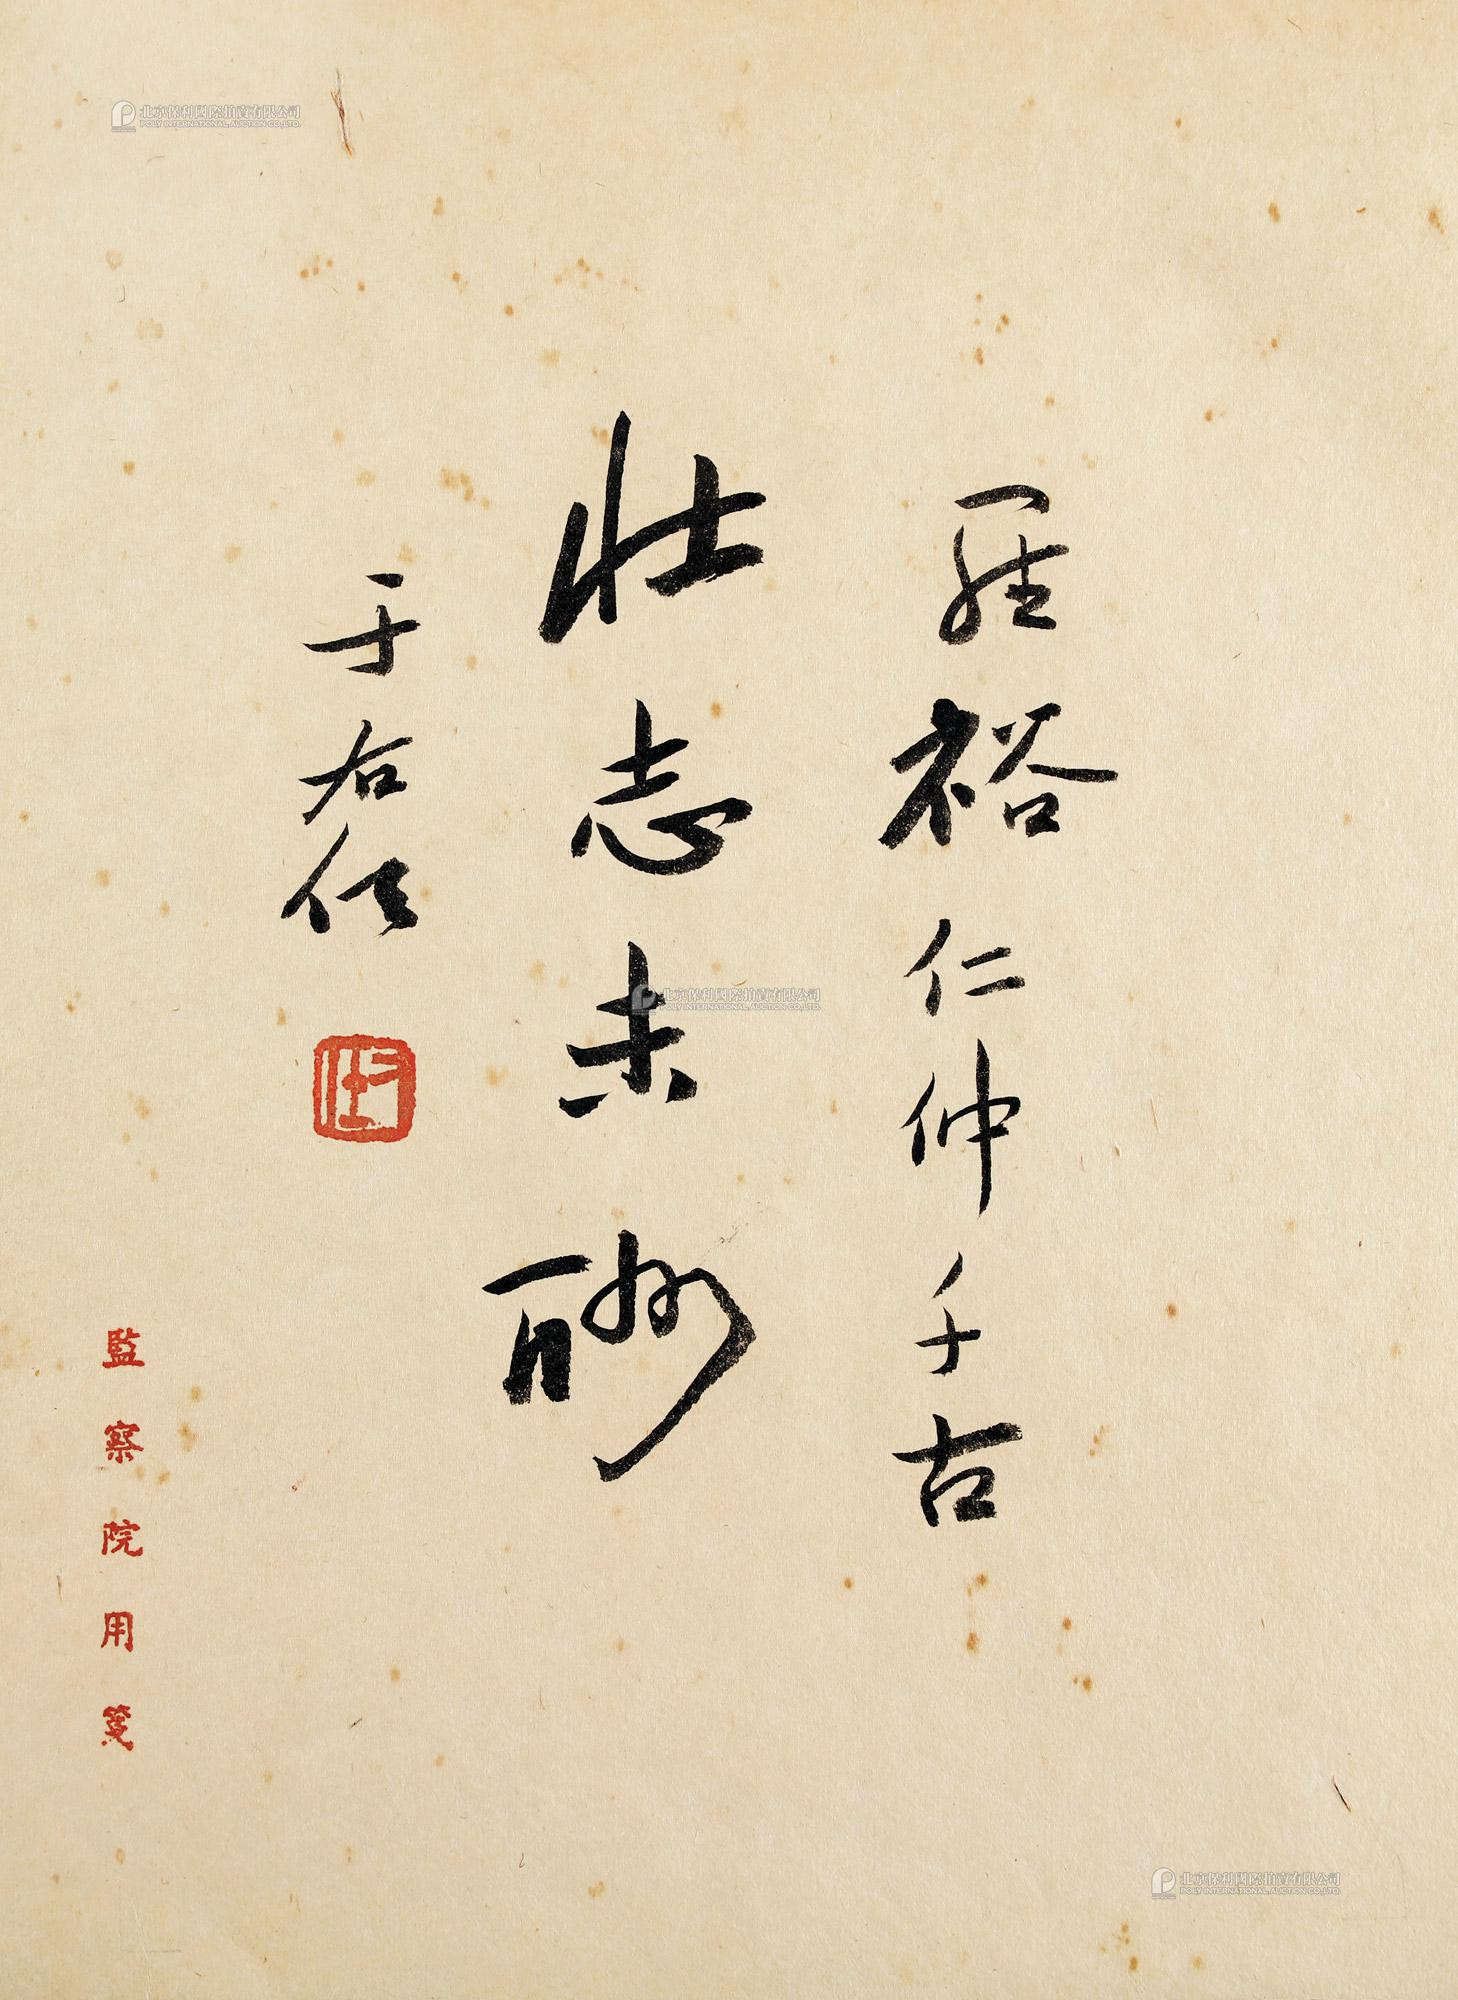 Calligraphy by Yu Youren